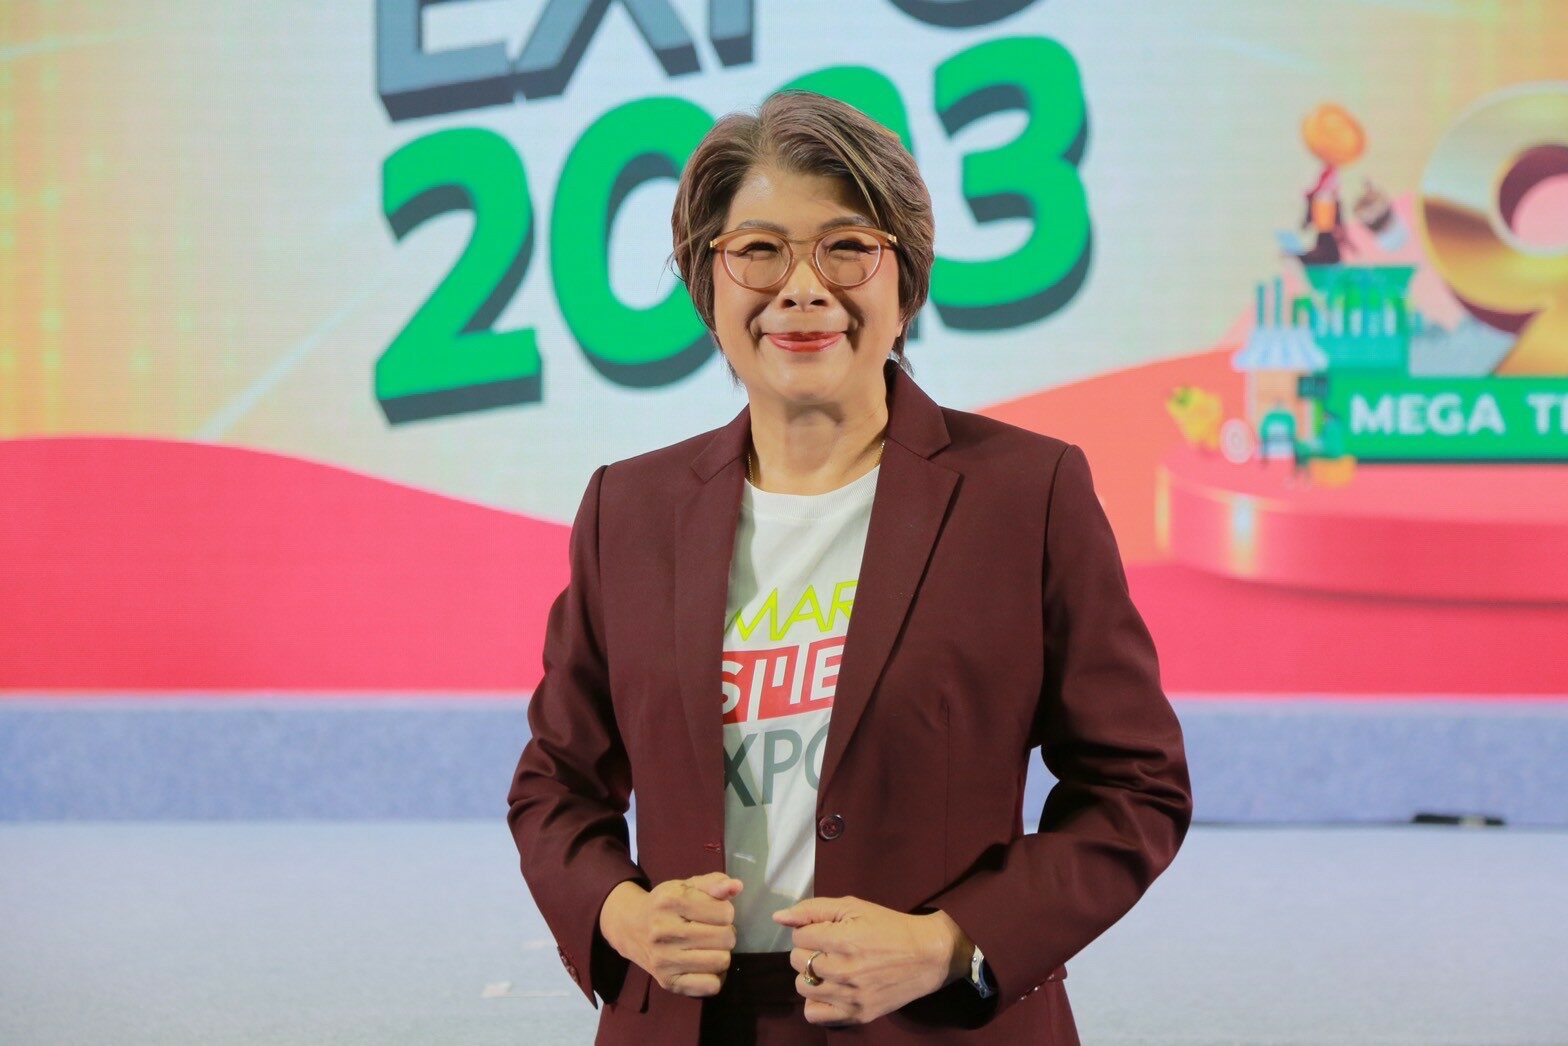 นางสาวณรินณ์ทิพ วิริยะบัณฑิตกุล ประธานเจ้าหน้าที่บริหาร บริษัท พีเอ็มจี คอร์ปอเรชั่น จำกัด ผู้จัดงาน Smart SME EXPO 2023